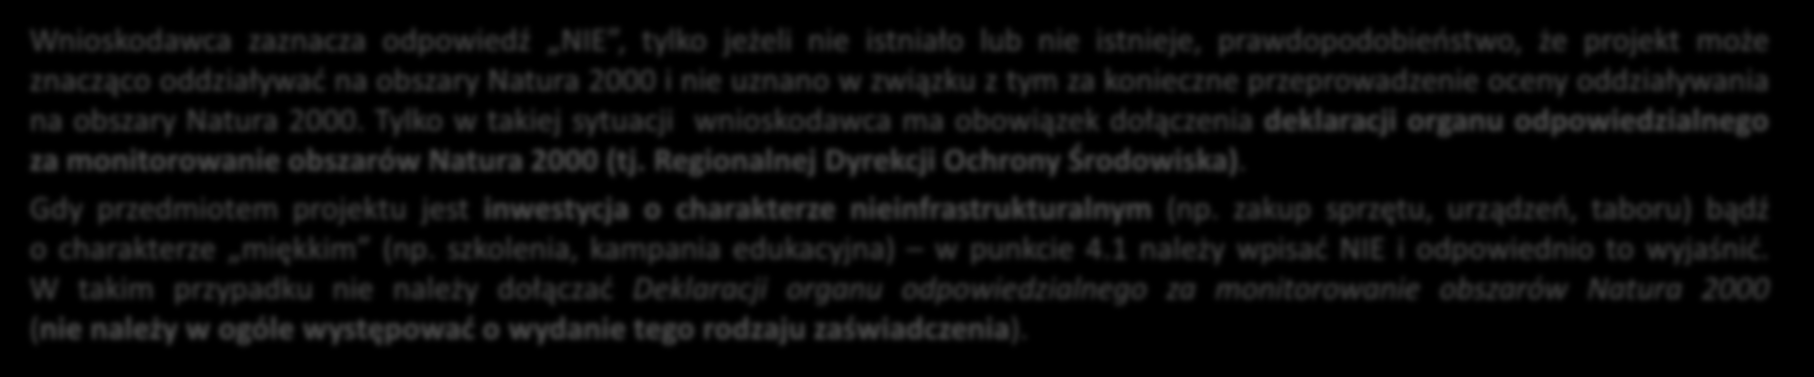 ANALIZA ZGODNOŚCI PROJEKTU Z POLITYKĄ OCHRONY ŚRODOWISKA cz. II 4.